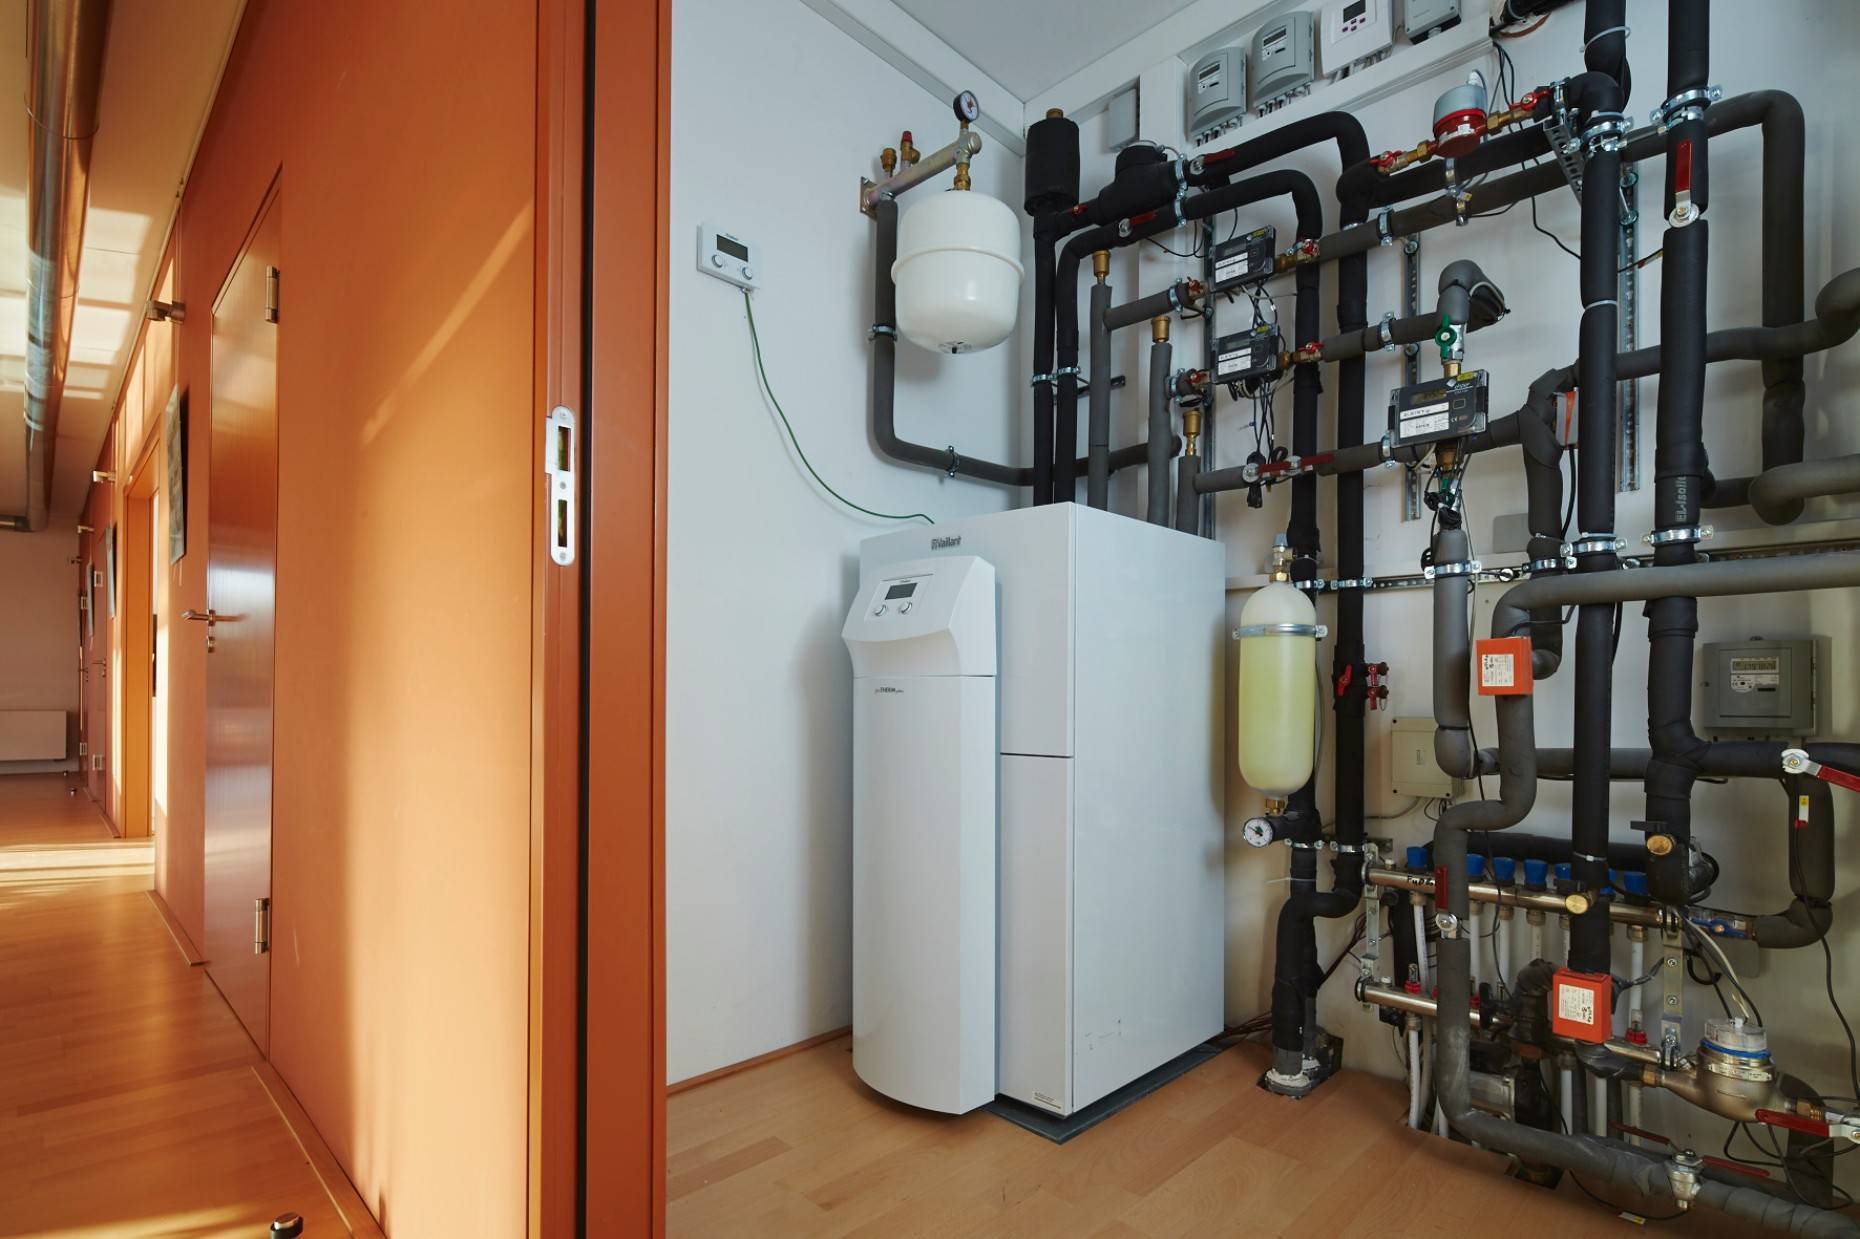 Отопление дачи газом | онлайн-журнал о ремонте и дизайне